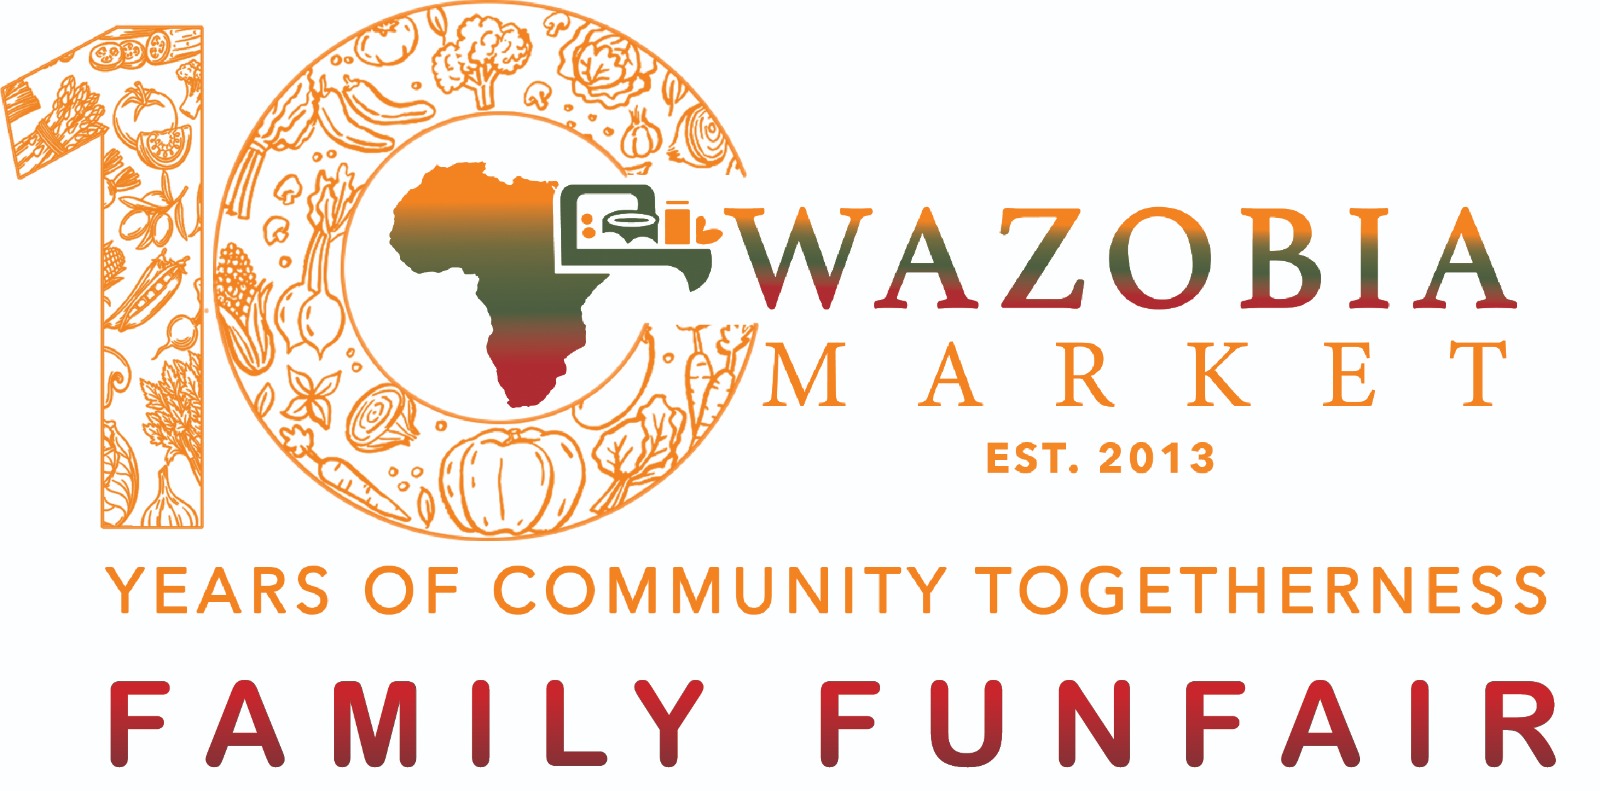 Celebrating 10 Years of Wazobia Market